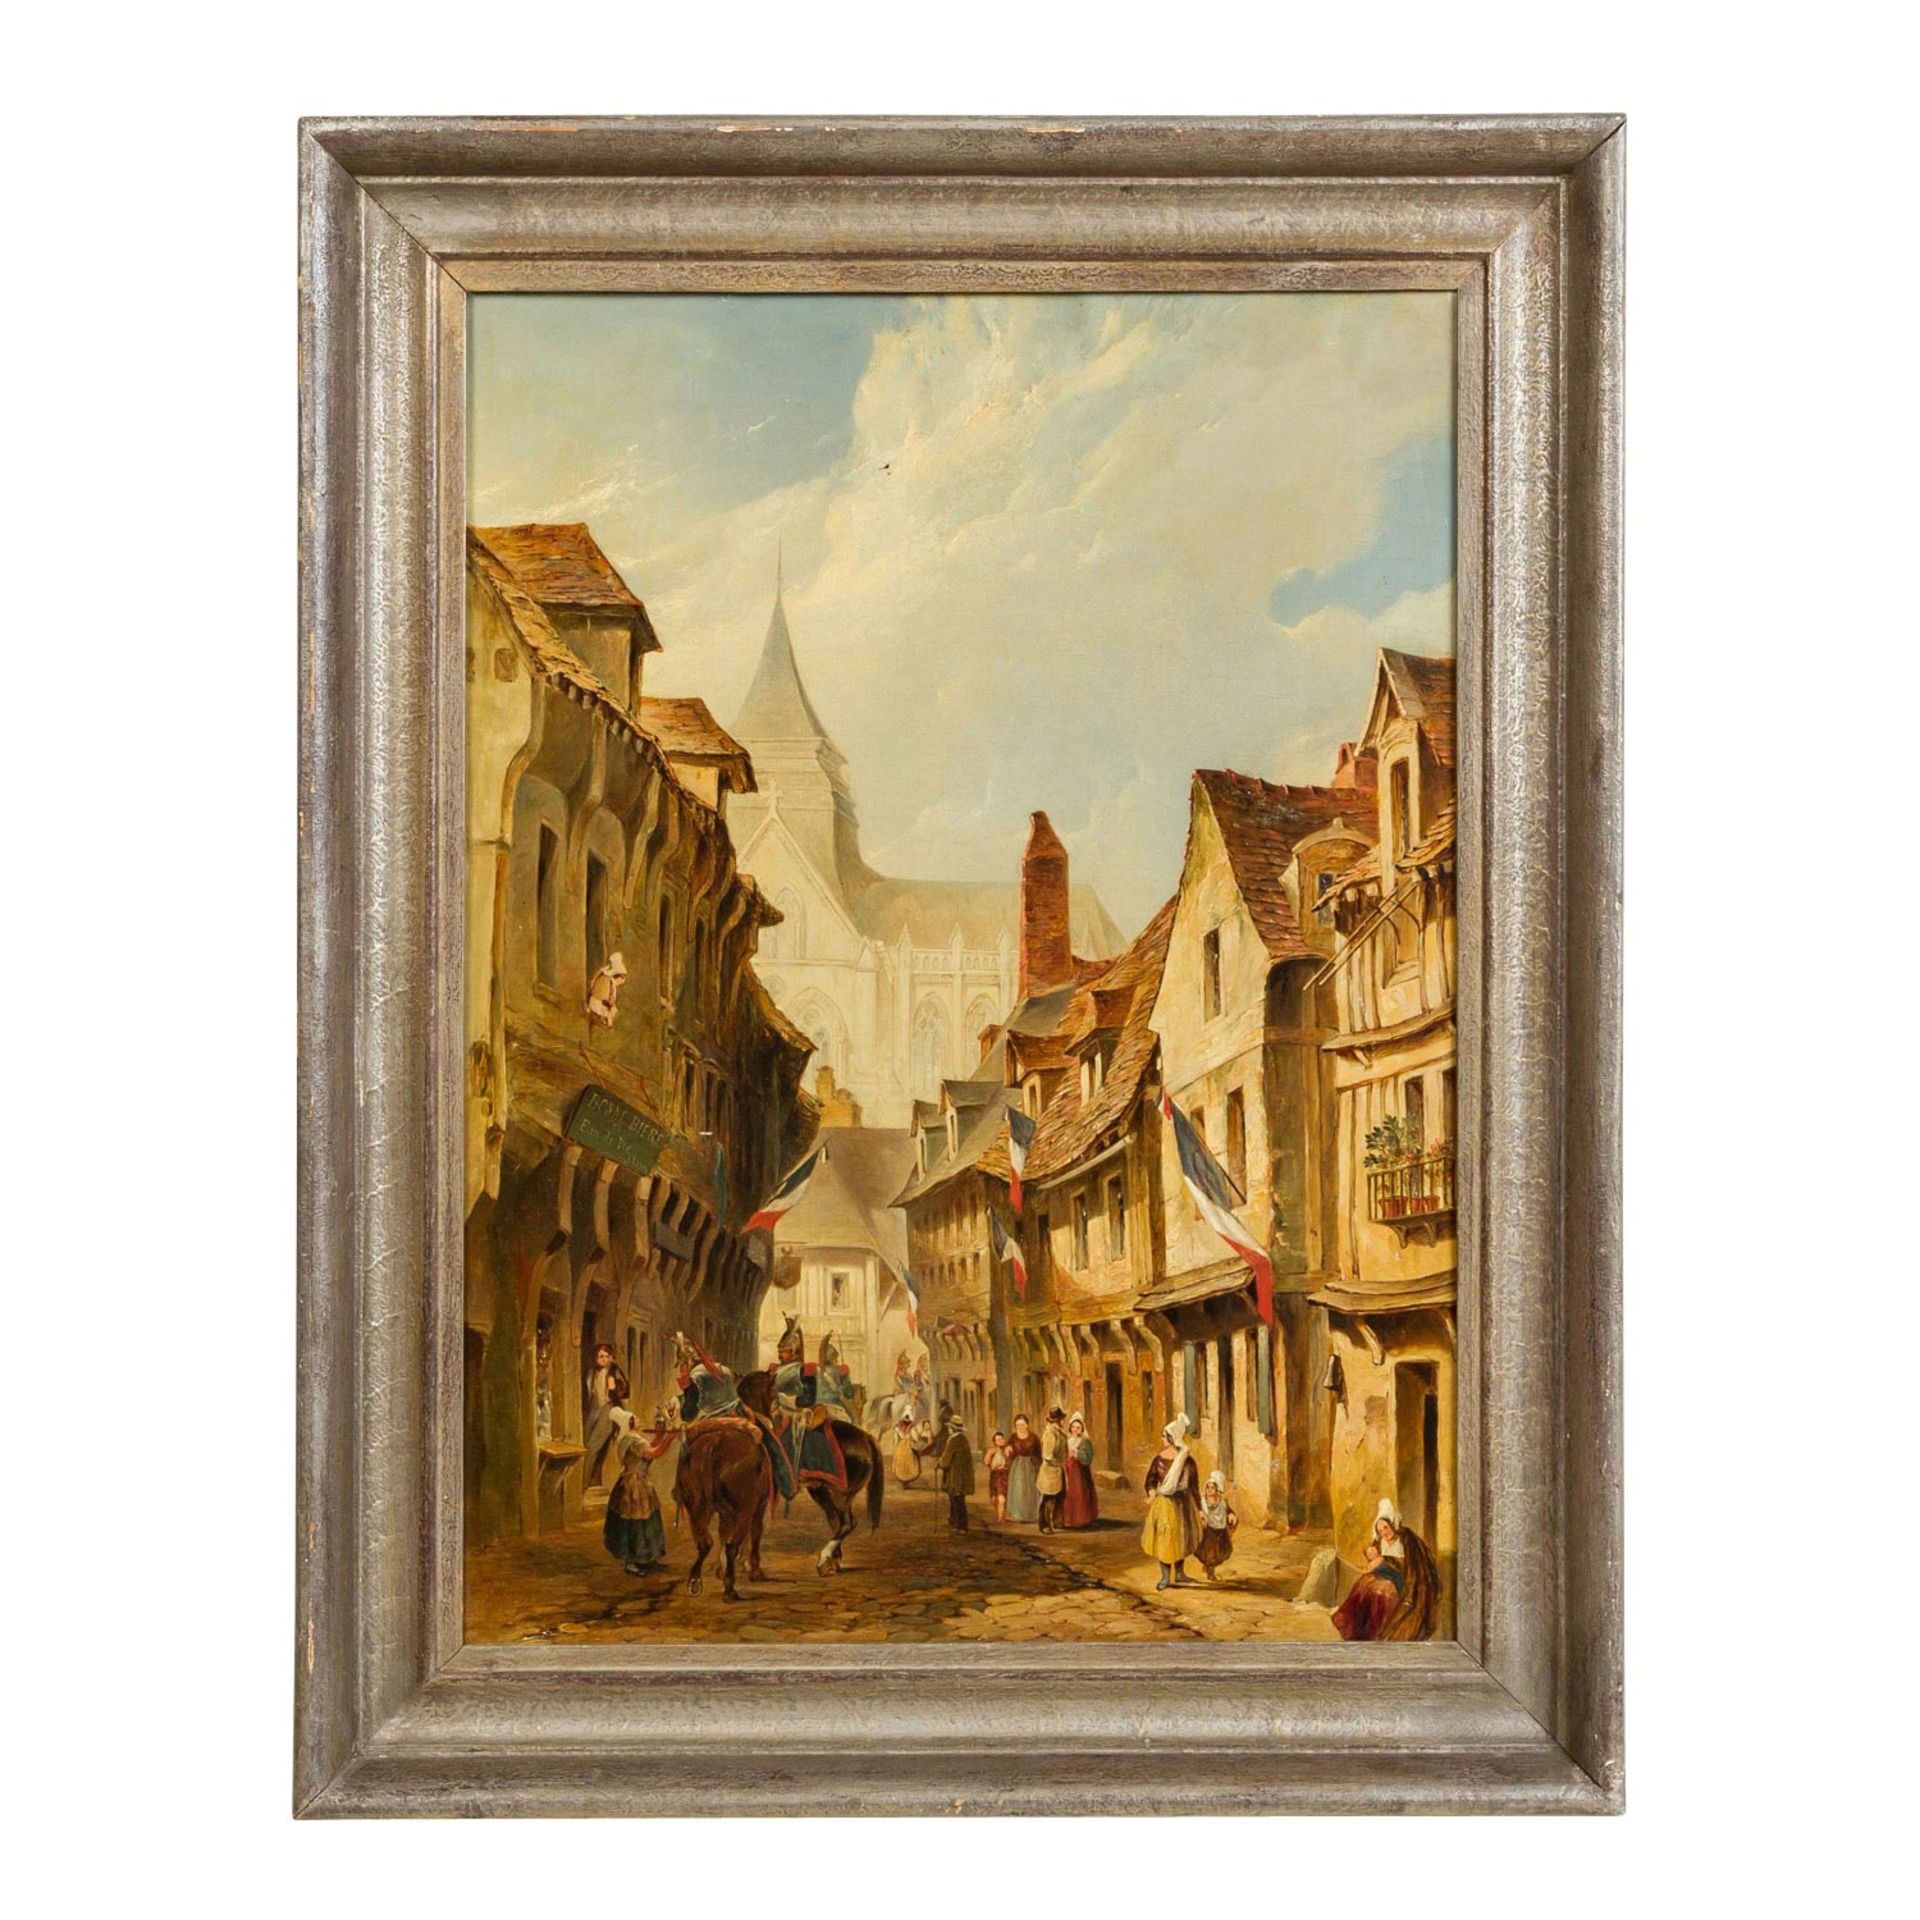 BROWNE, GEORGE H. (engl. Maler, tät. 1836-1885), "Französische Soldaten in der Stadt", 1849, wohl - Bild 2 aus 5